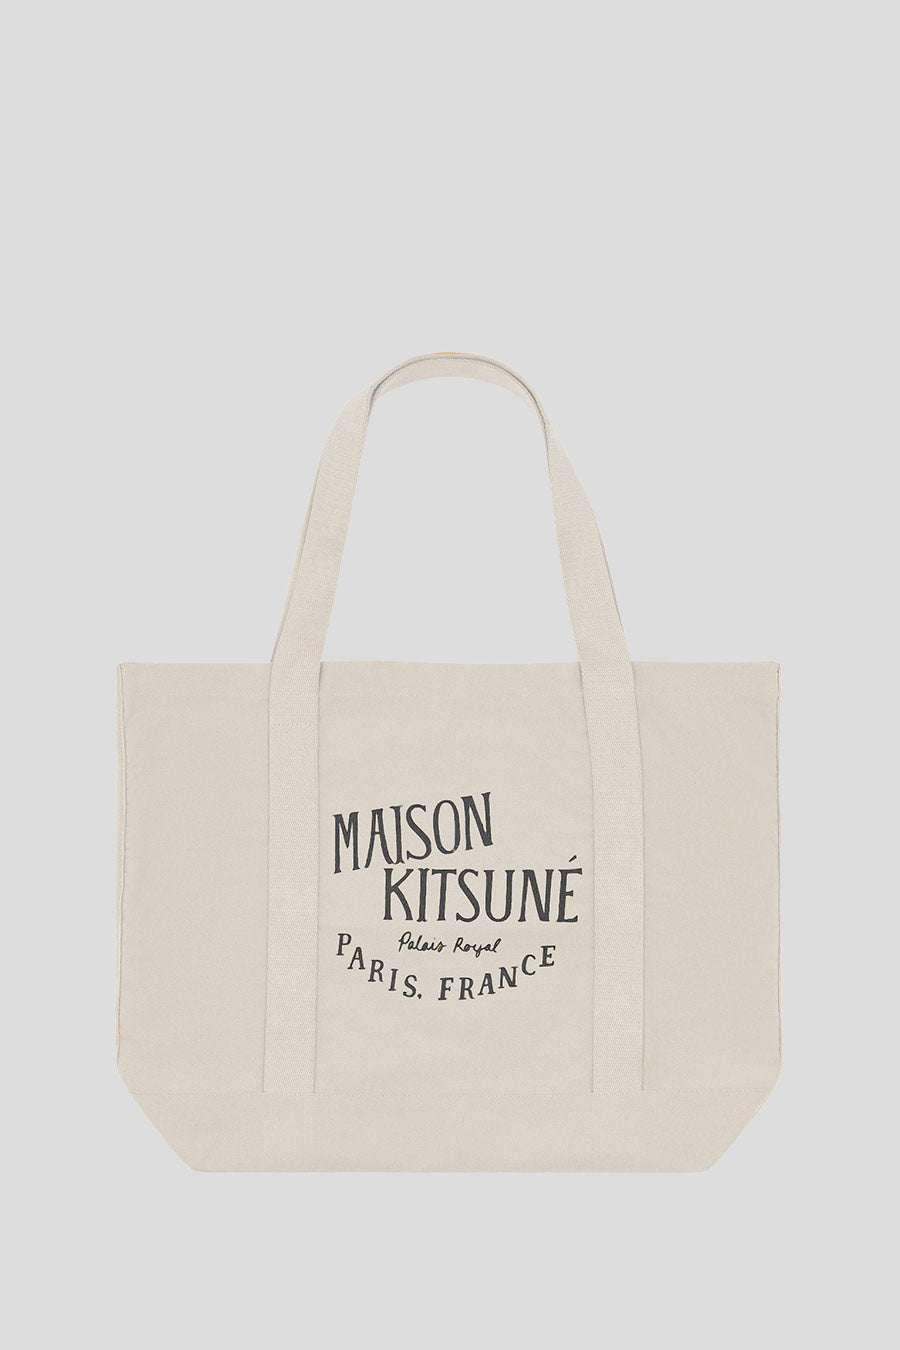 Maison Kitsune - BAG PALAIS ROYAL SHOPPING ECRU - LE LABO STORE